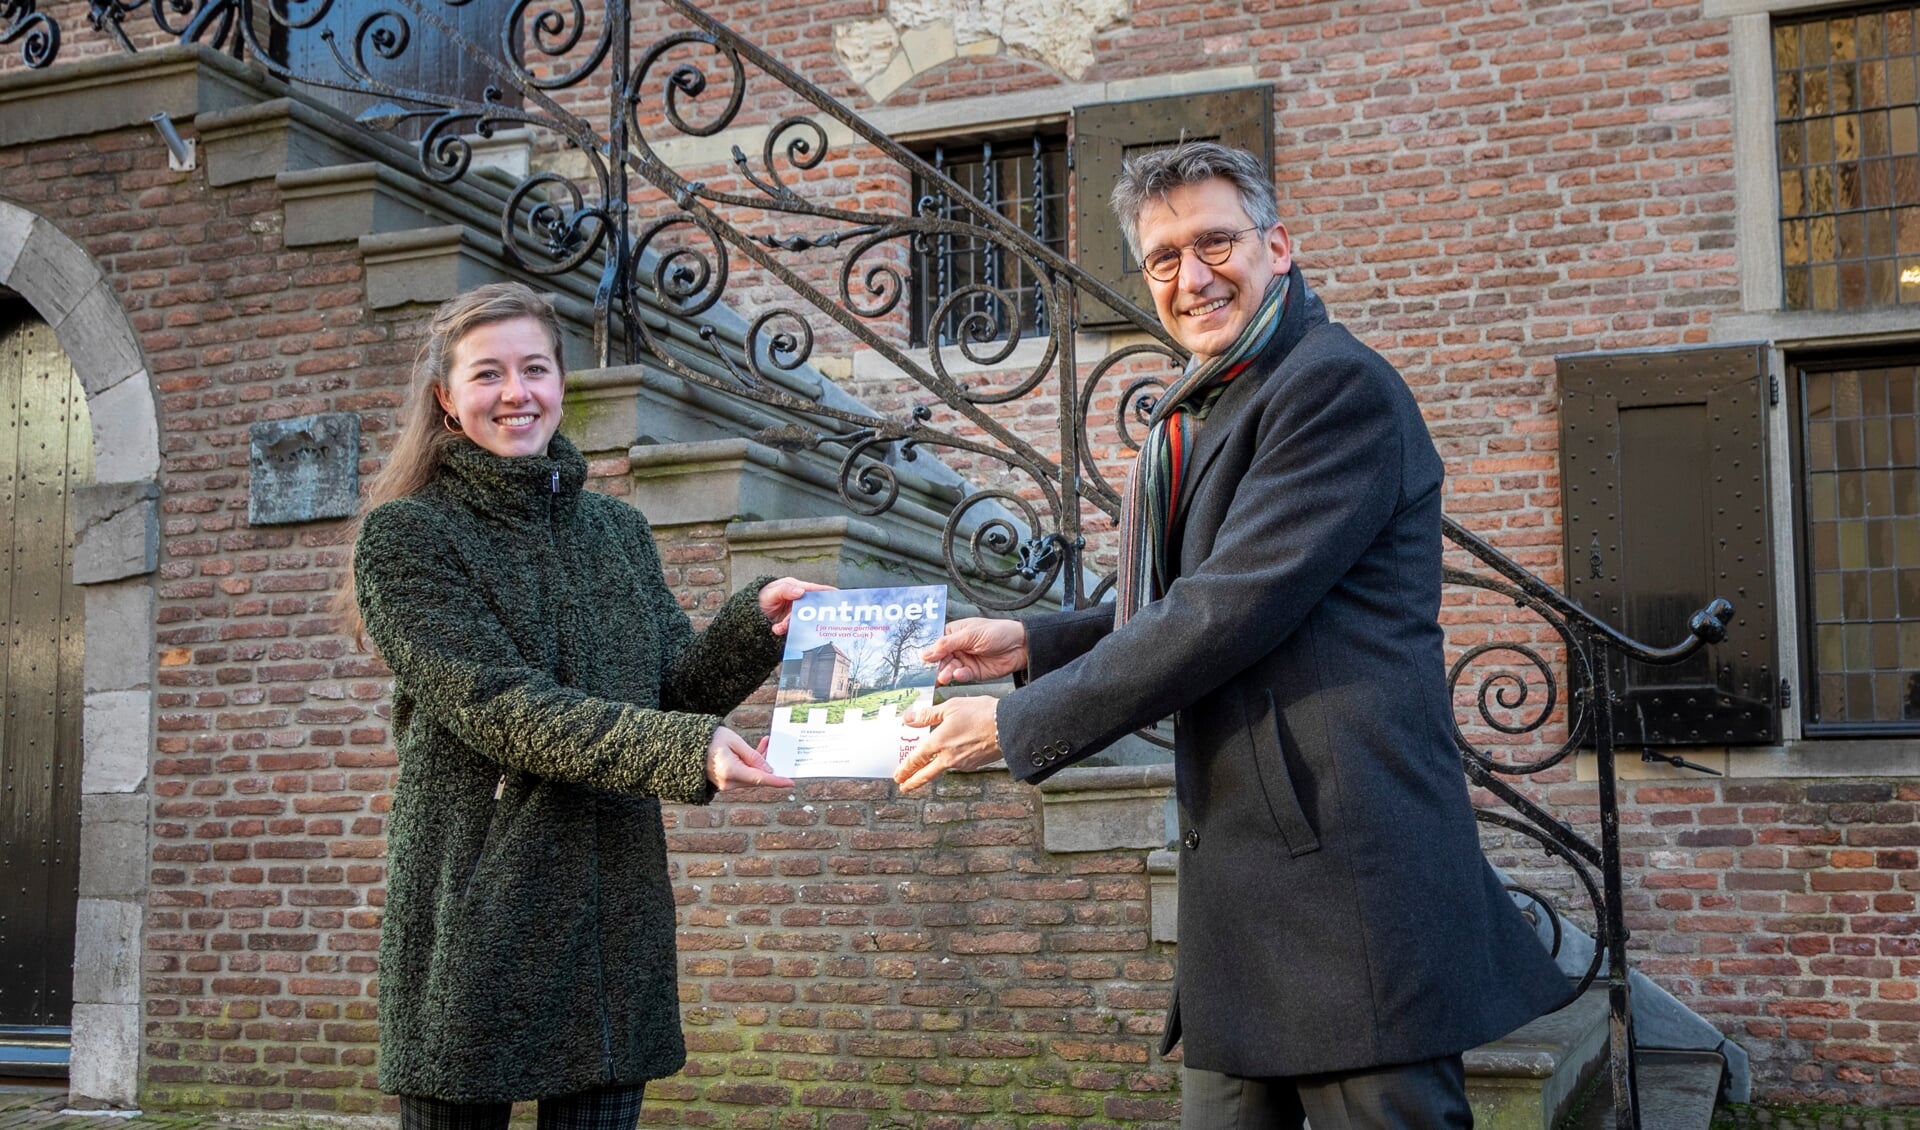 Waarnemend burgemeester Wim Hillenaar reikt het eerste exemplaar van Ontmoet uit aan Anne Hirdes.